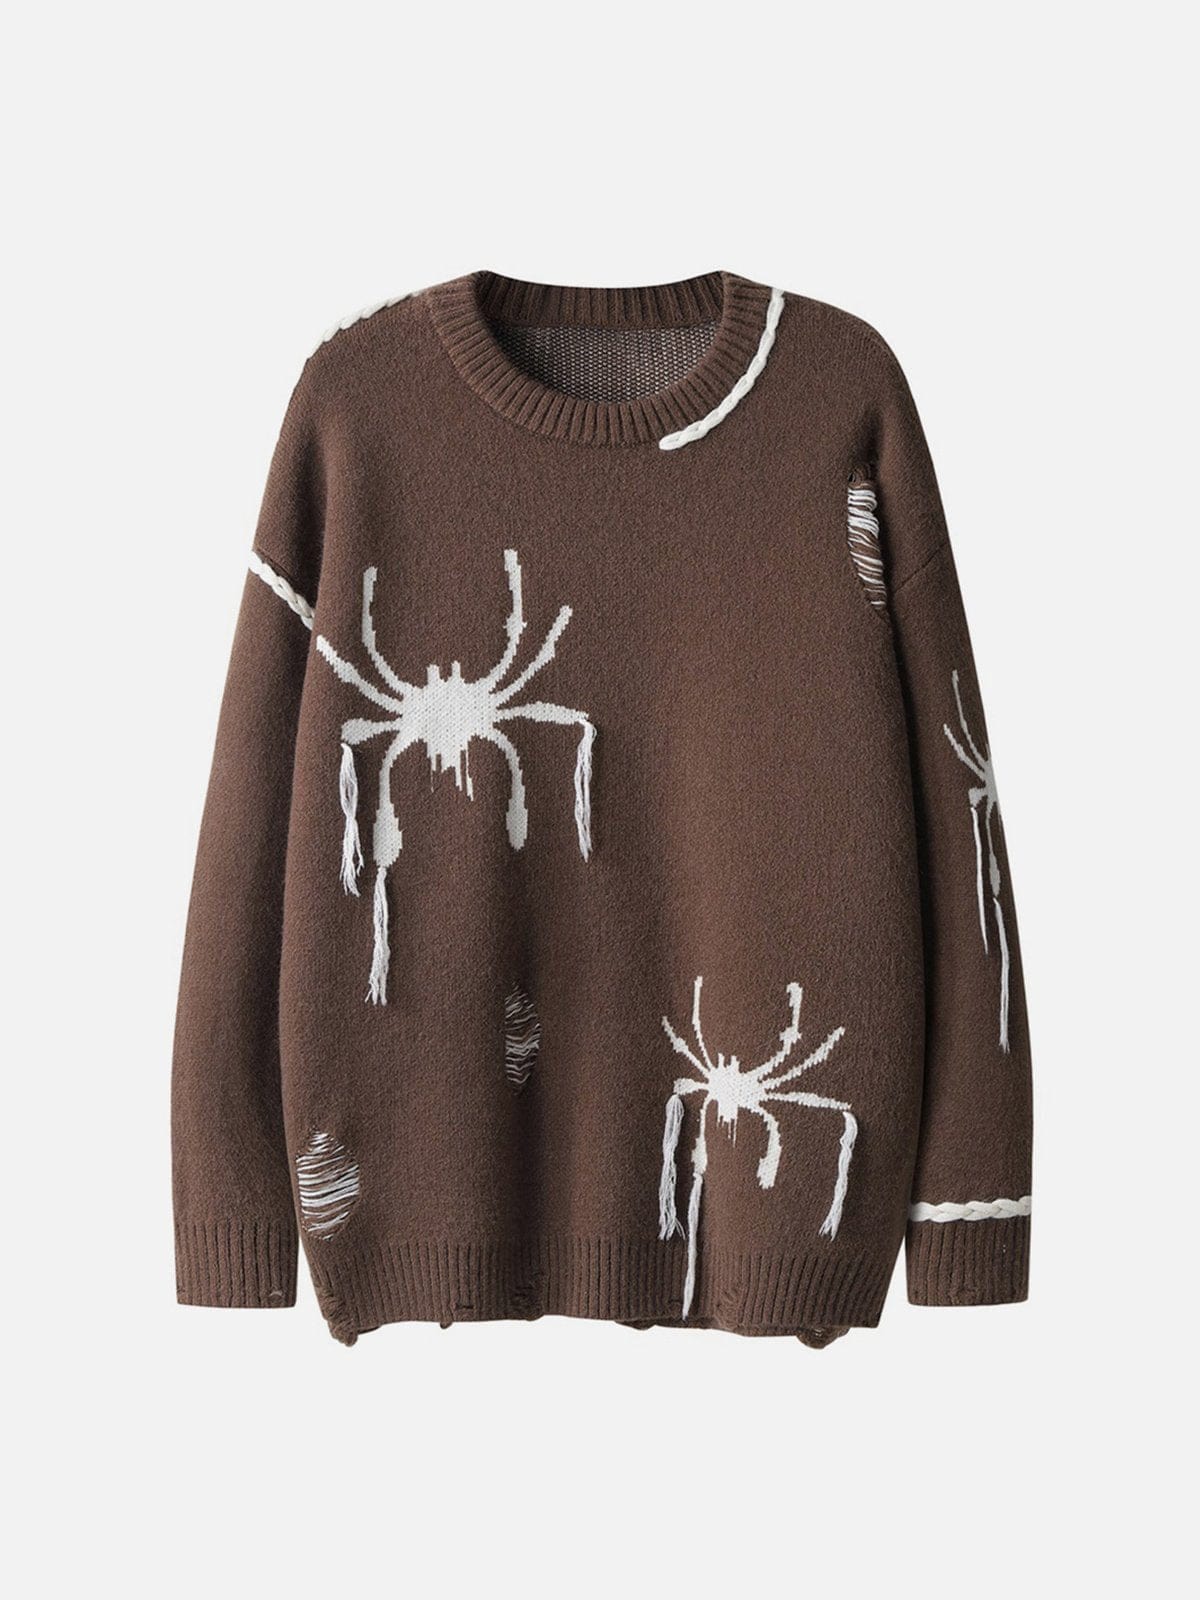 Spider Tassel Sweater